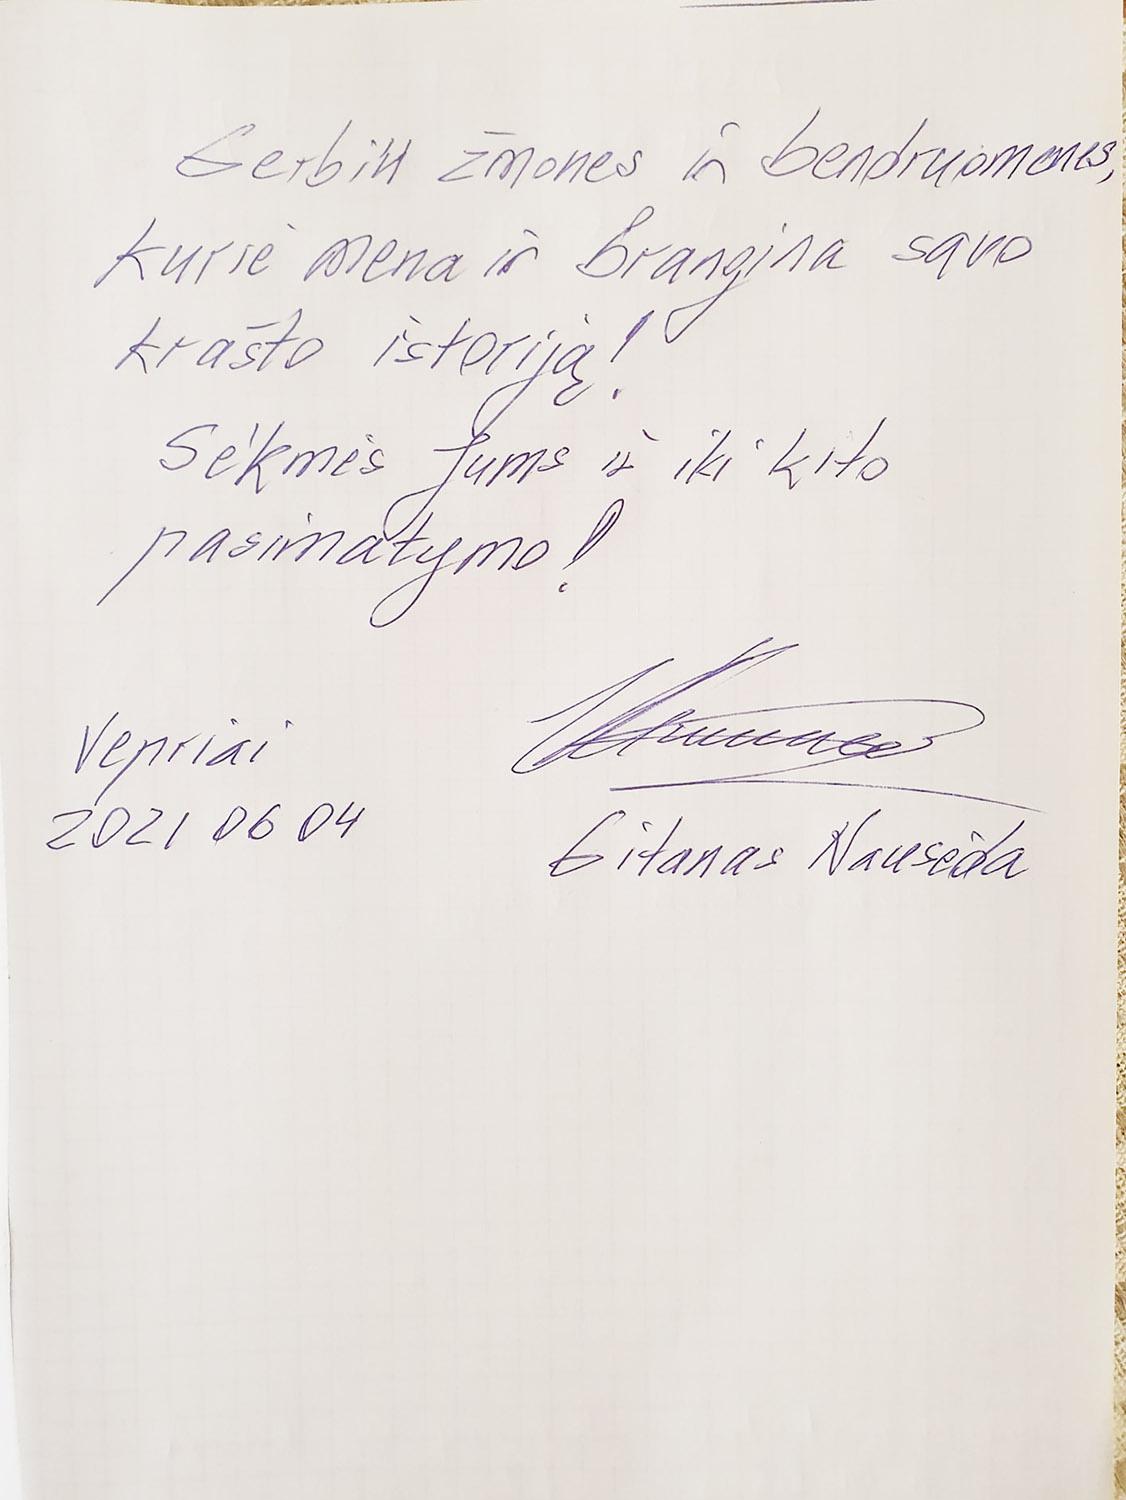 Veprių krašto muziejų aplankė šalies prezidentas / Prezidentas pasirašė Veprių muziejaus svečių knygoje.